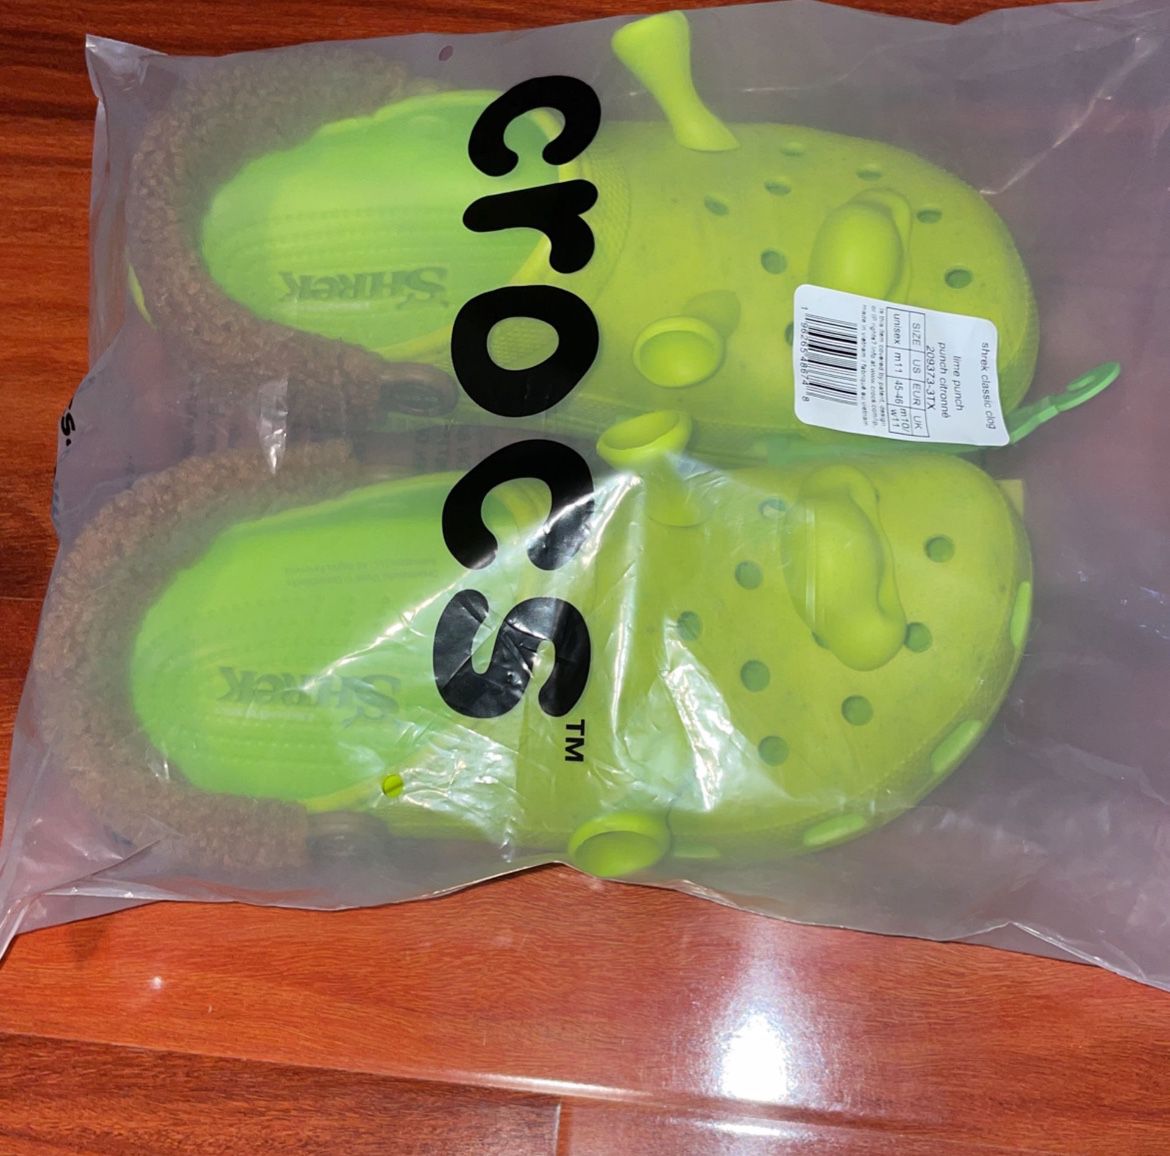 Crocs Shrek Classic Clog Sizes (10M, 11M)